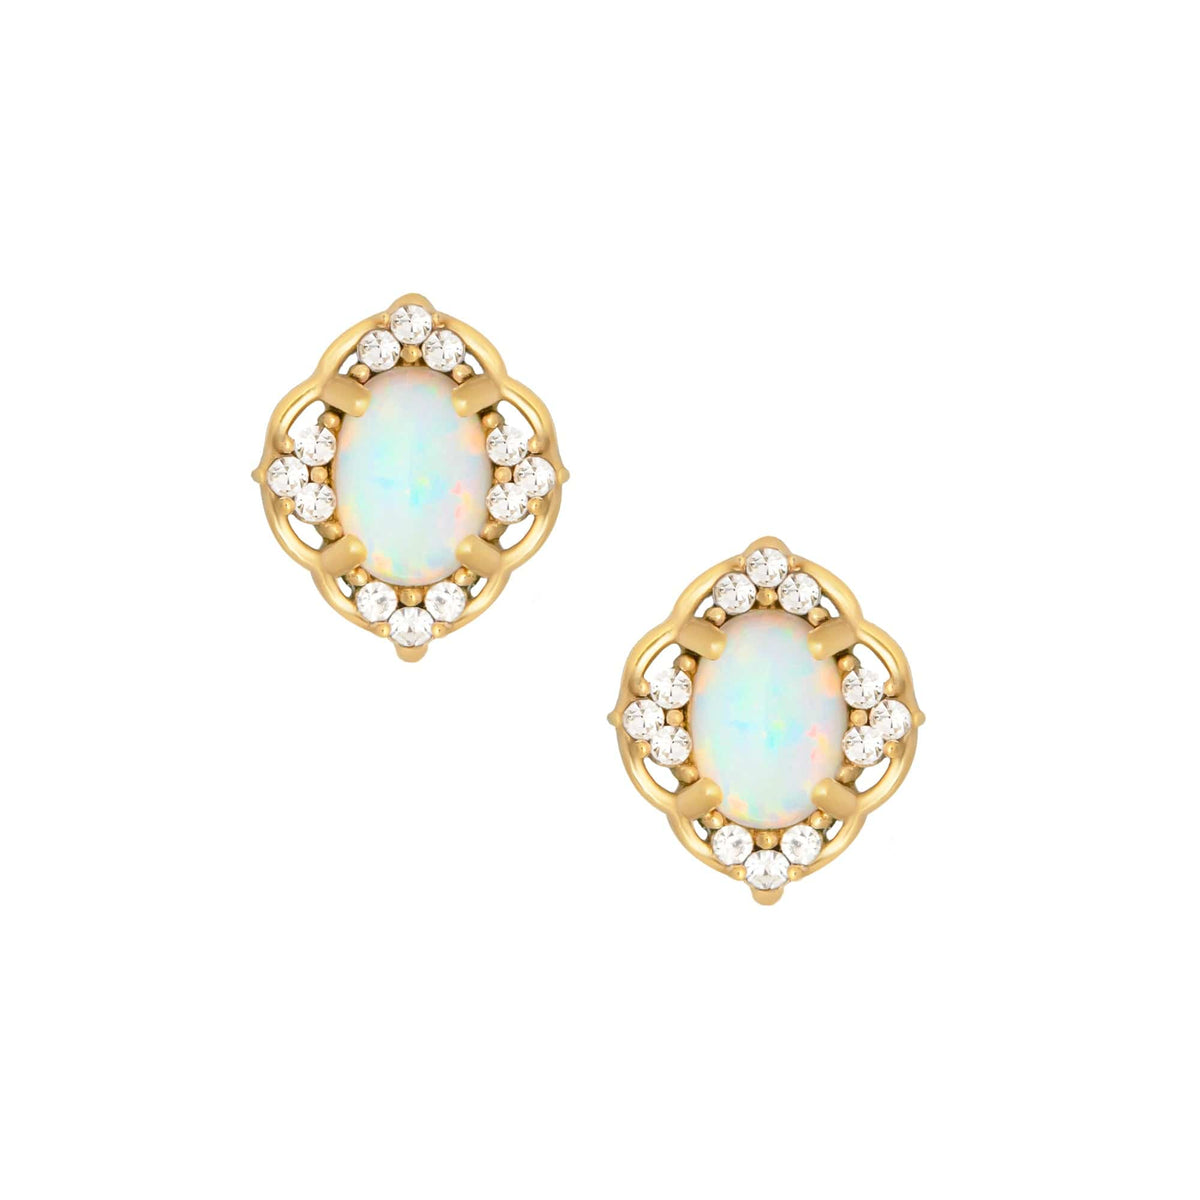 Bohomoon Stainless Steel Oceana Opal Stud Earrings